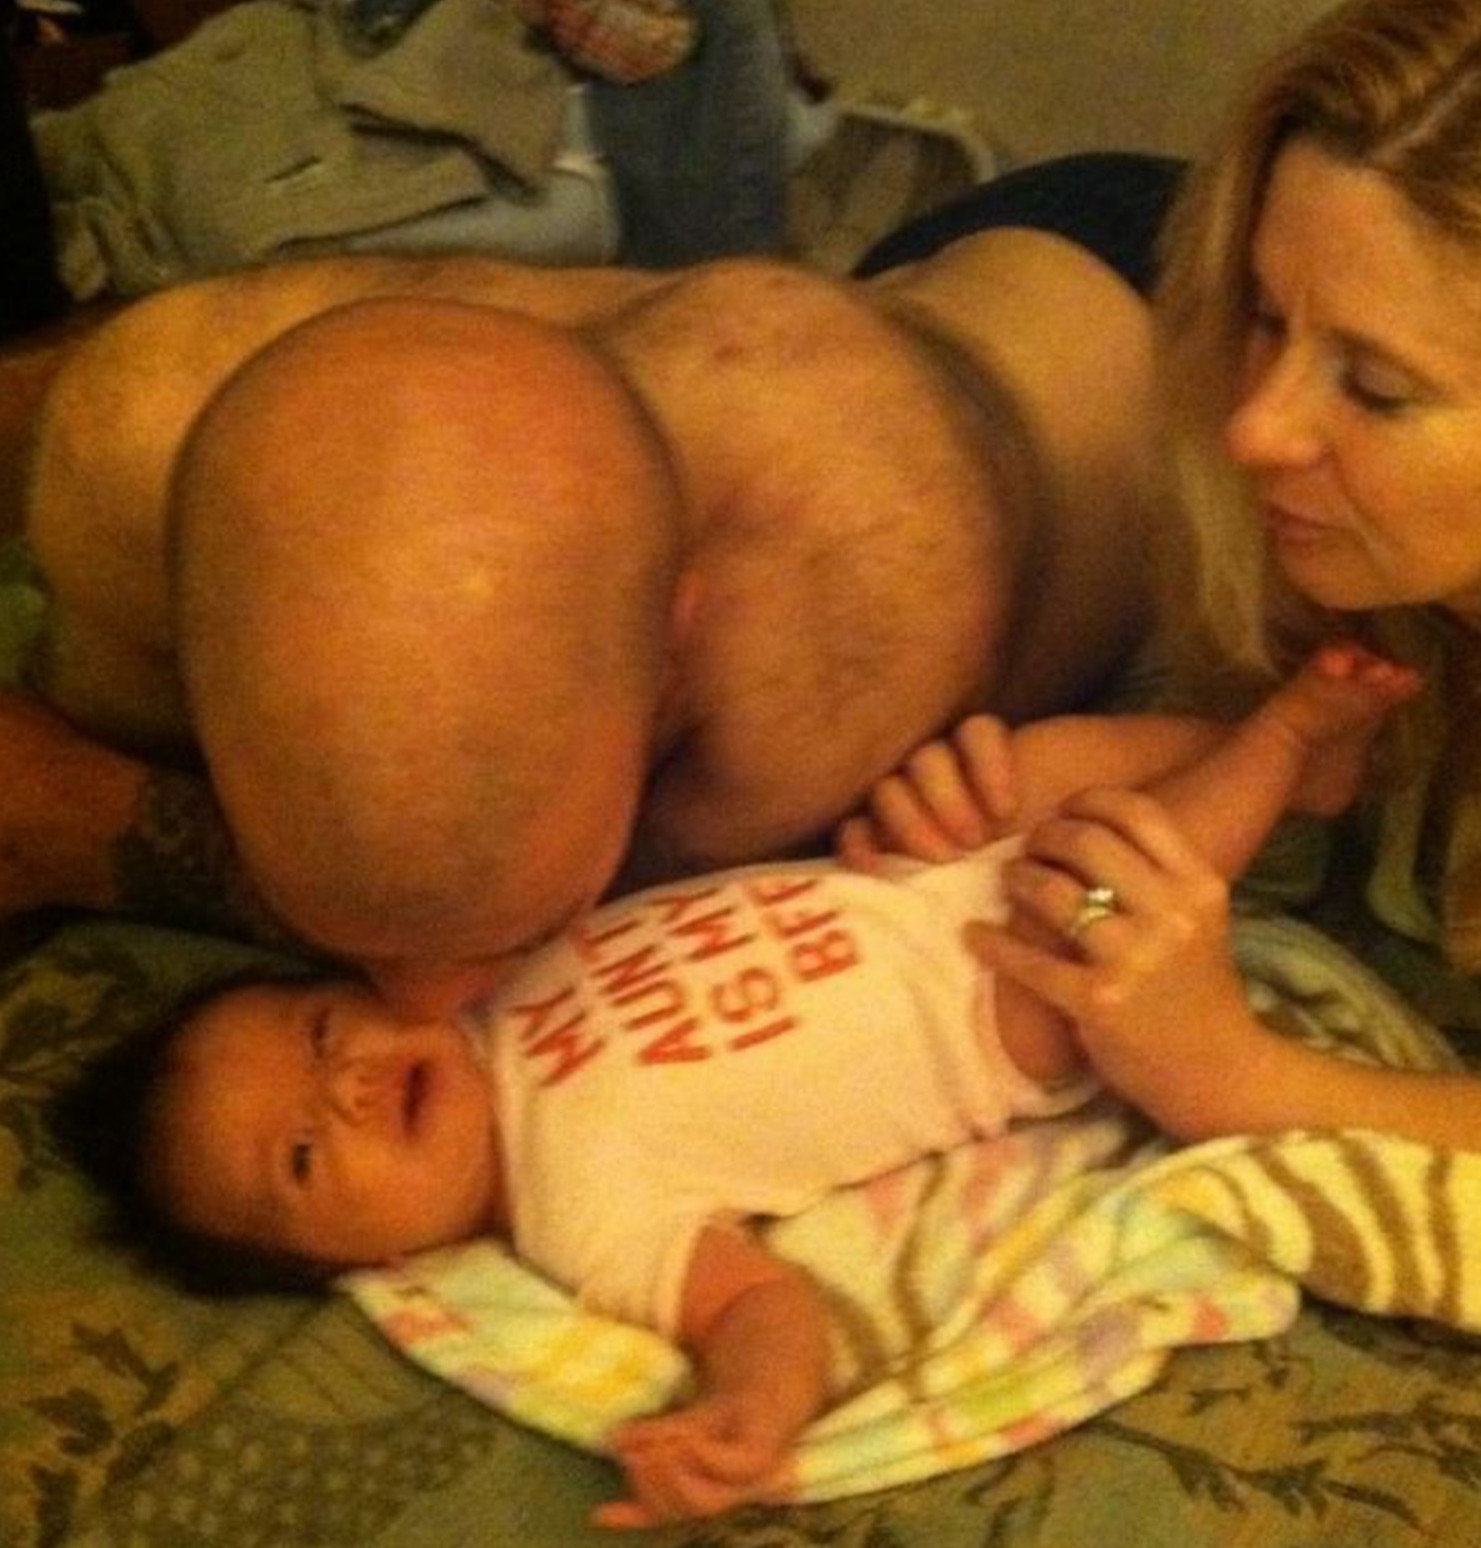 Папа целует ребёнка. Вы же именно так и подумали при первом взгляде на фото?